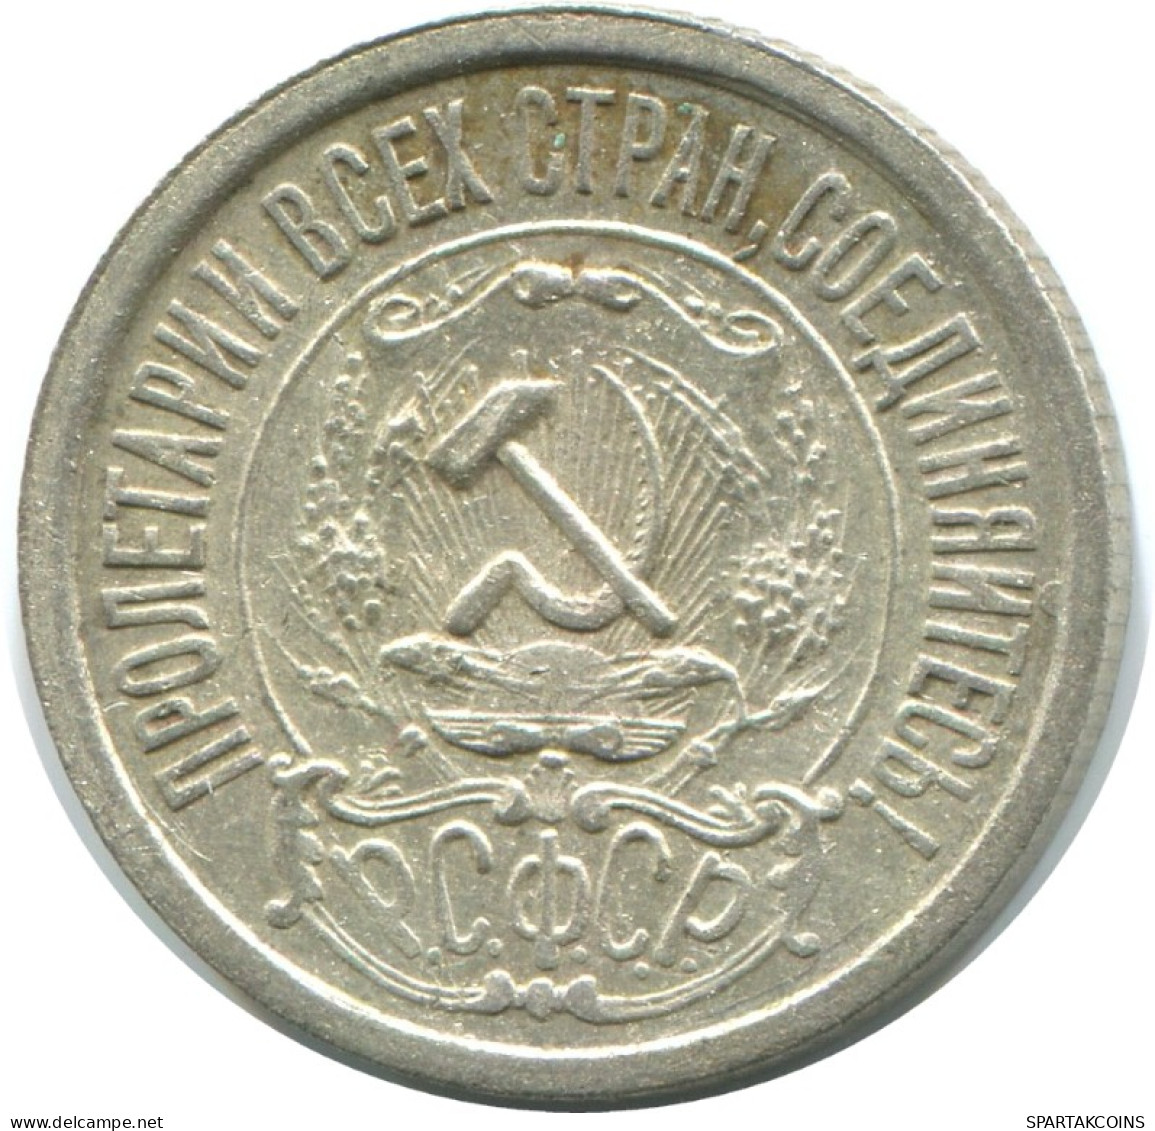 15 KOPEKS 1922 RUSSLAND RUSSIA RSFSR SILBER Münze HIGH GRADE #AF176.4.D.A - Russia